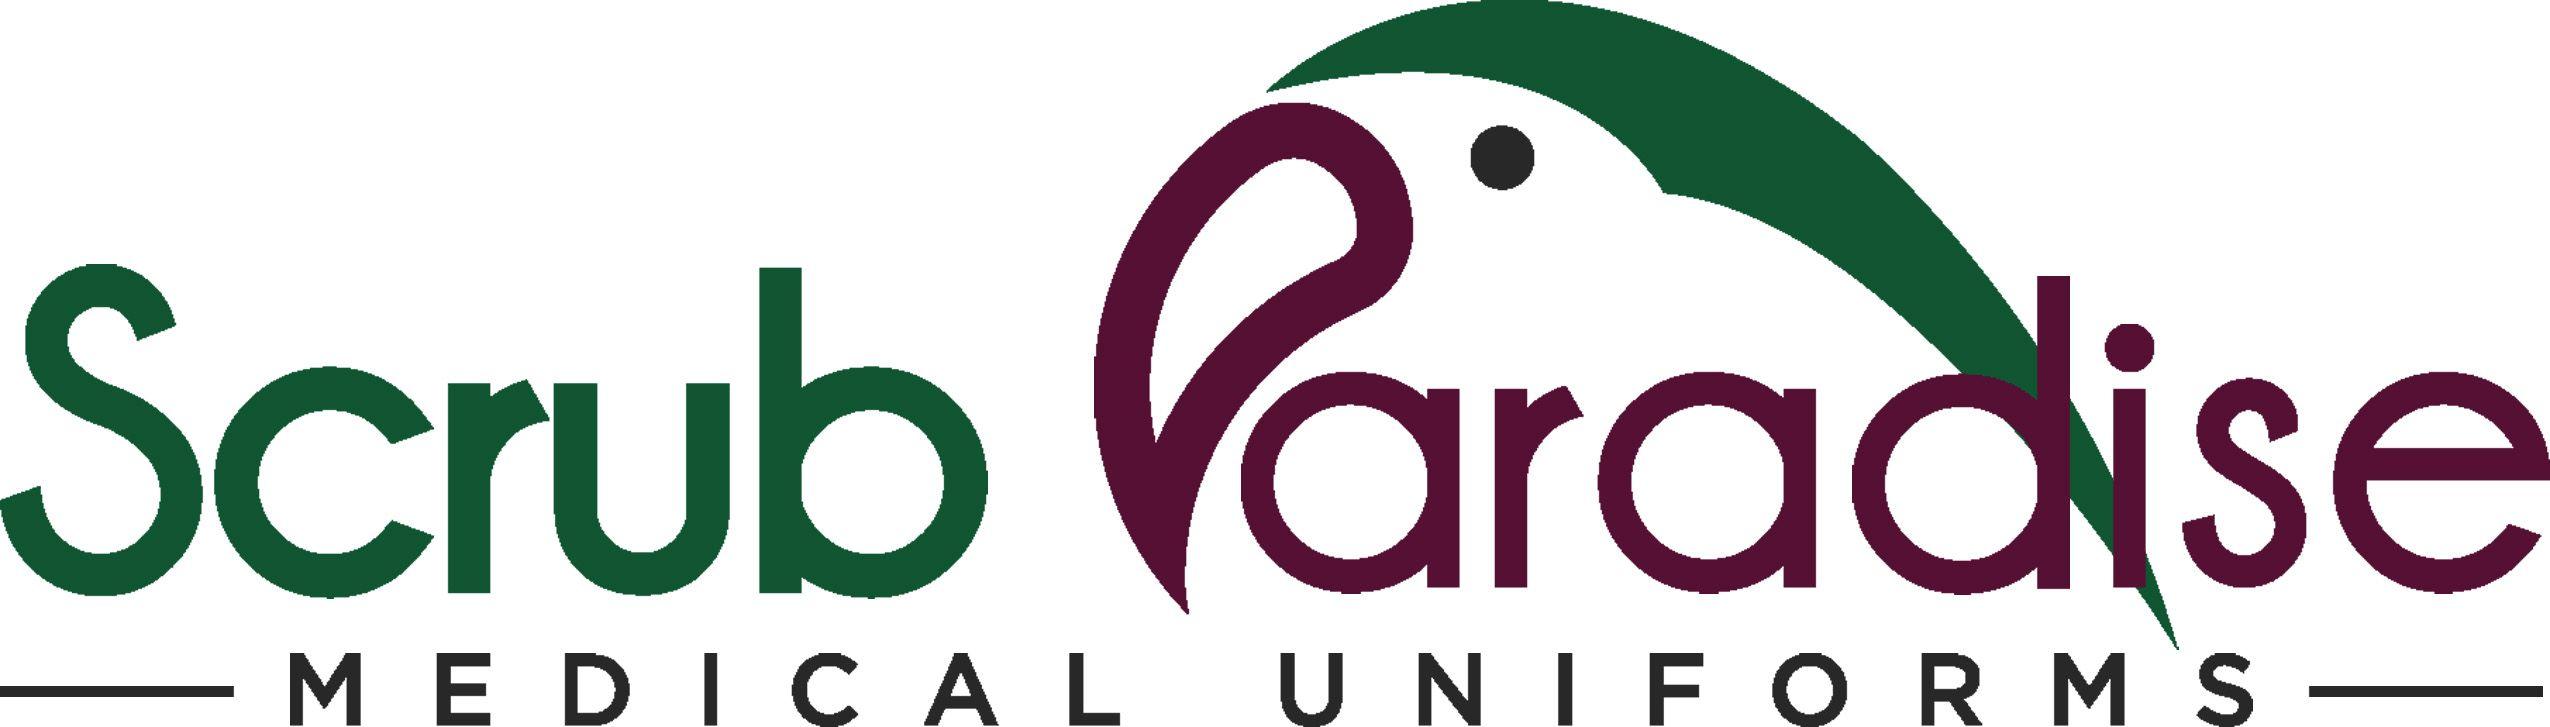 Scrubs Logo - Medical Uniforms and Scrubs in Ocala Florida - Scrub Paradise